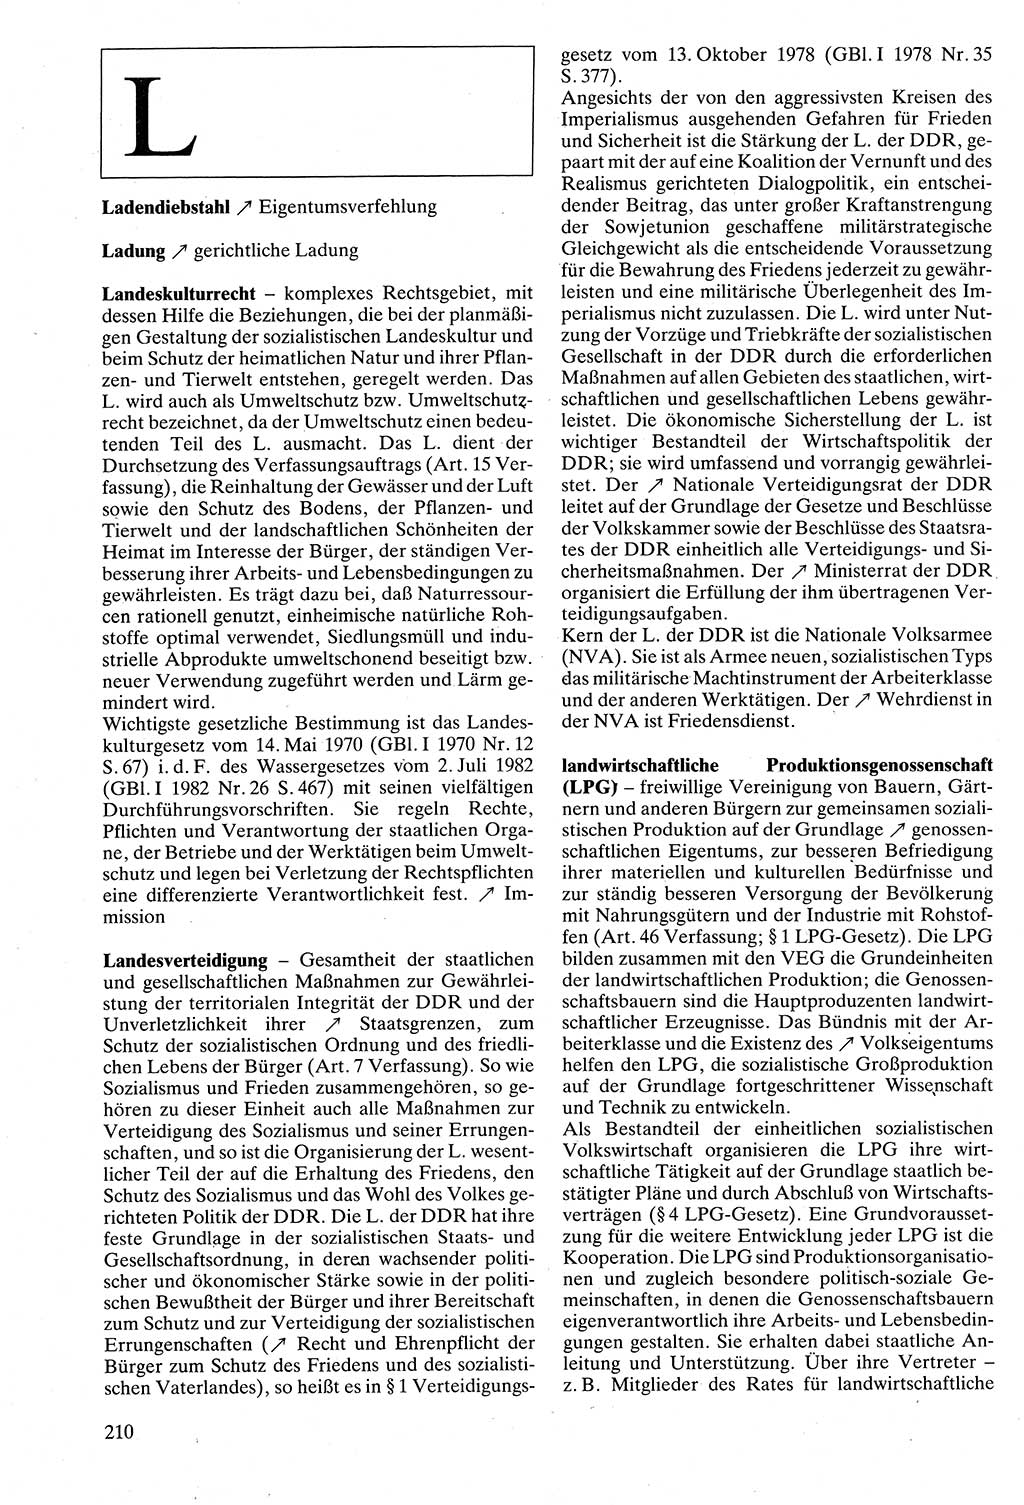 Rechtslexikon [Deutsche Demokratische Republik (DDR)] 1988, Seite 210 (Rechtslex. DDR 1988, S. 210)